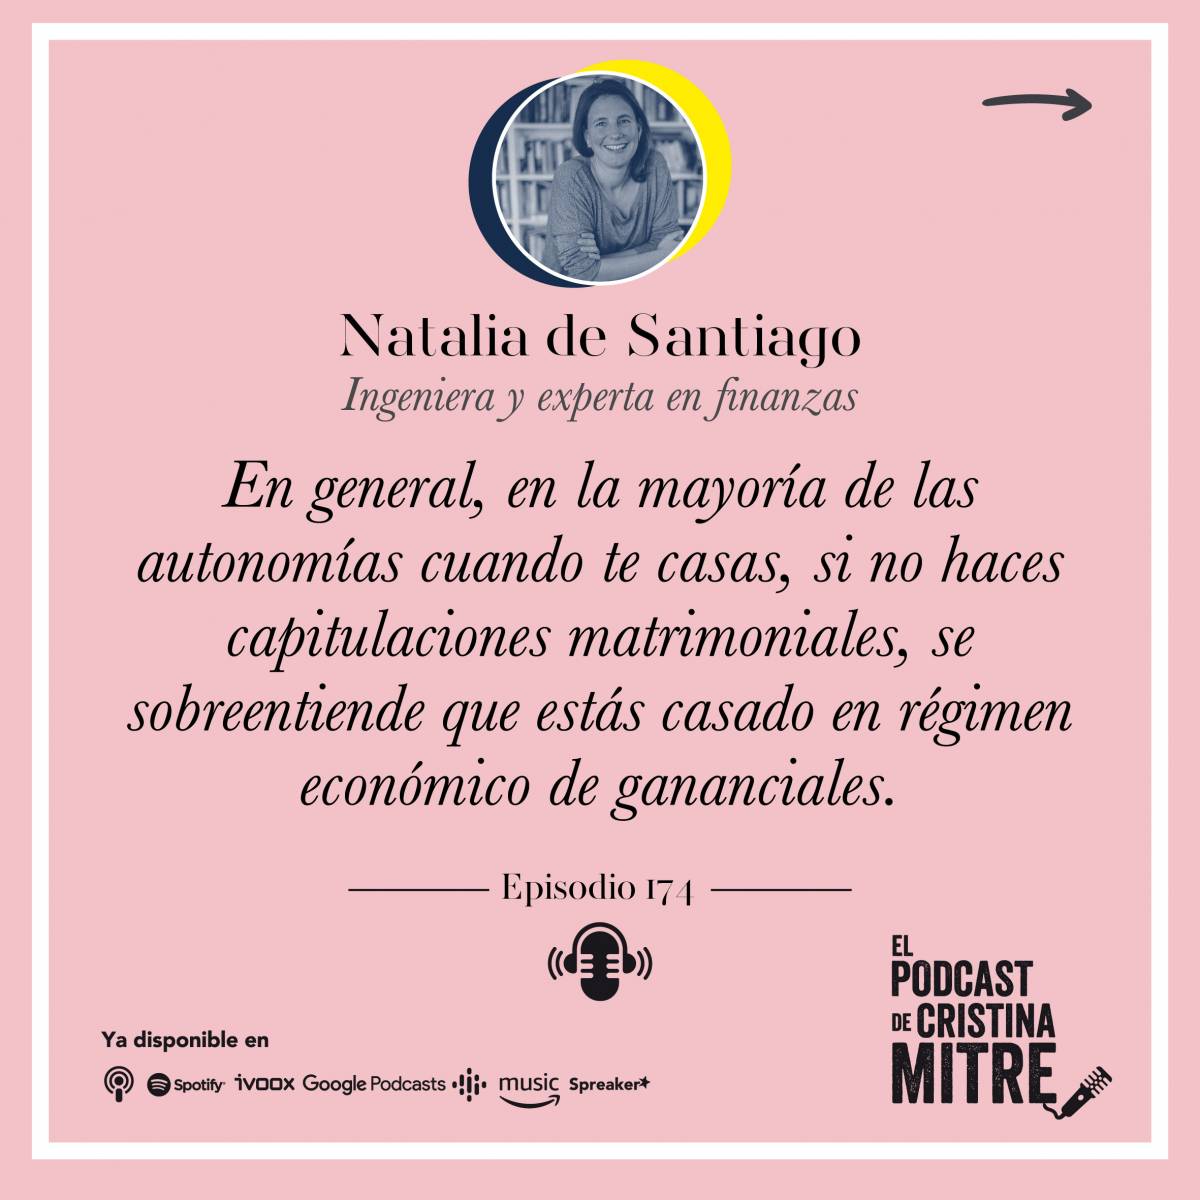 Cristina Mitre Natalia de Santiago capitulaciones matrimoniales